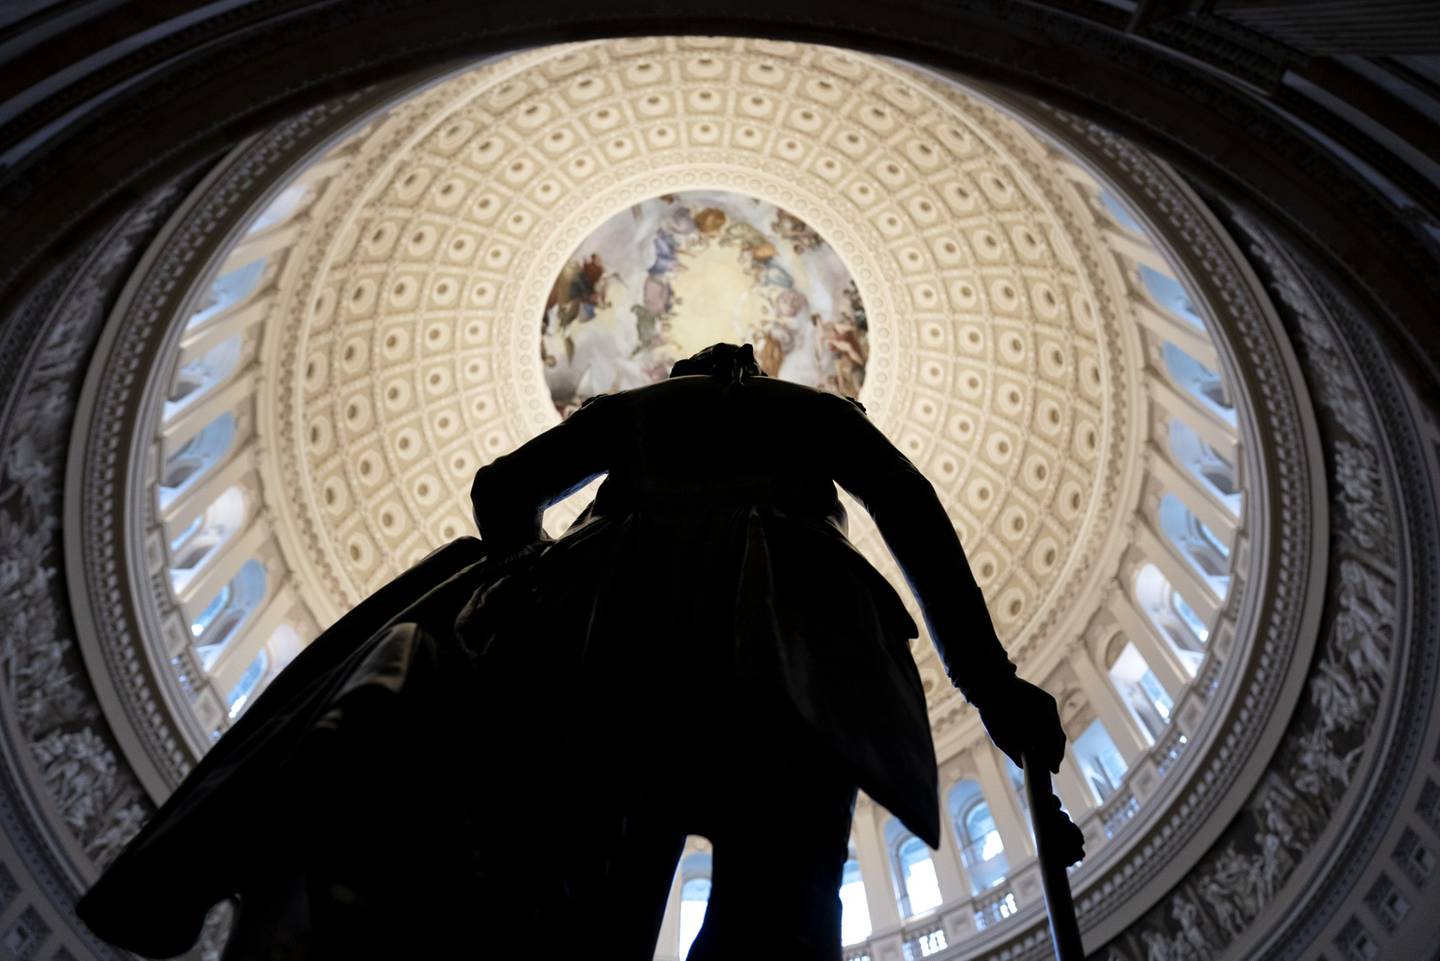 Una estatua de George Washington en el interior de la Rotonda del Capitolio de EE.UU. en Washington, D.C.